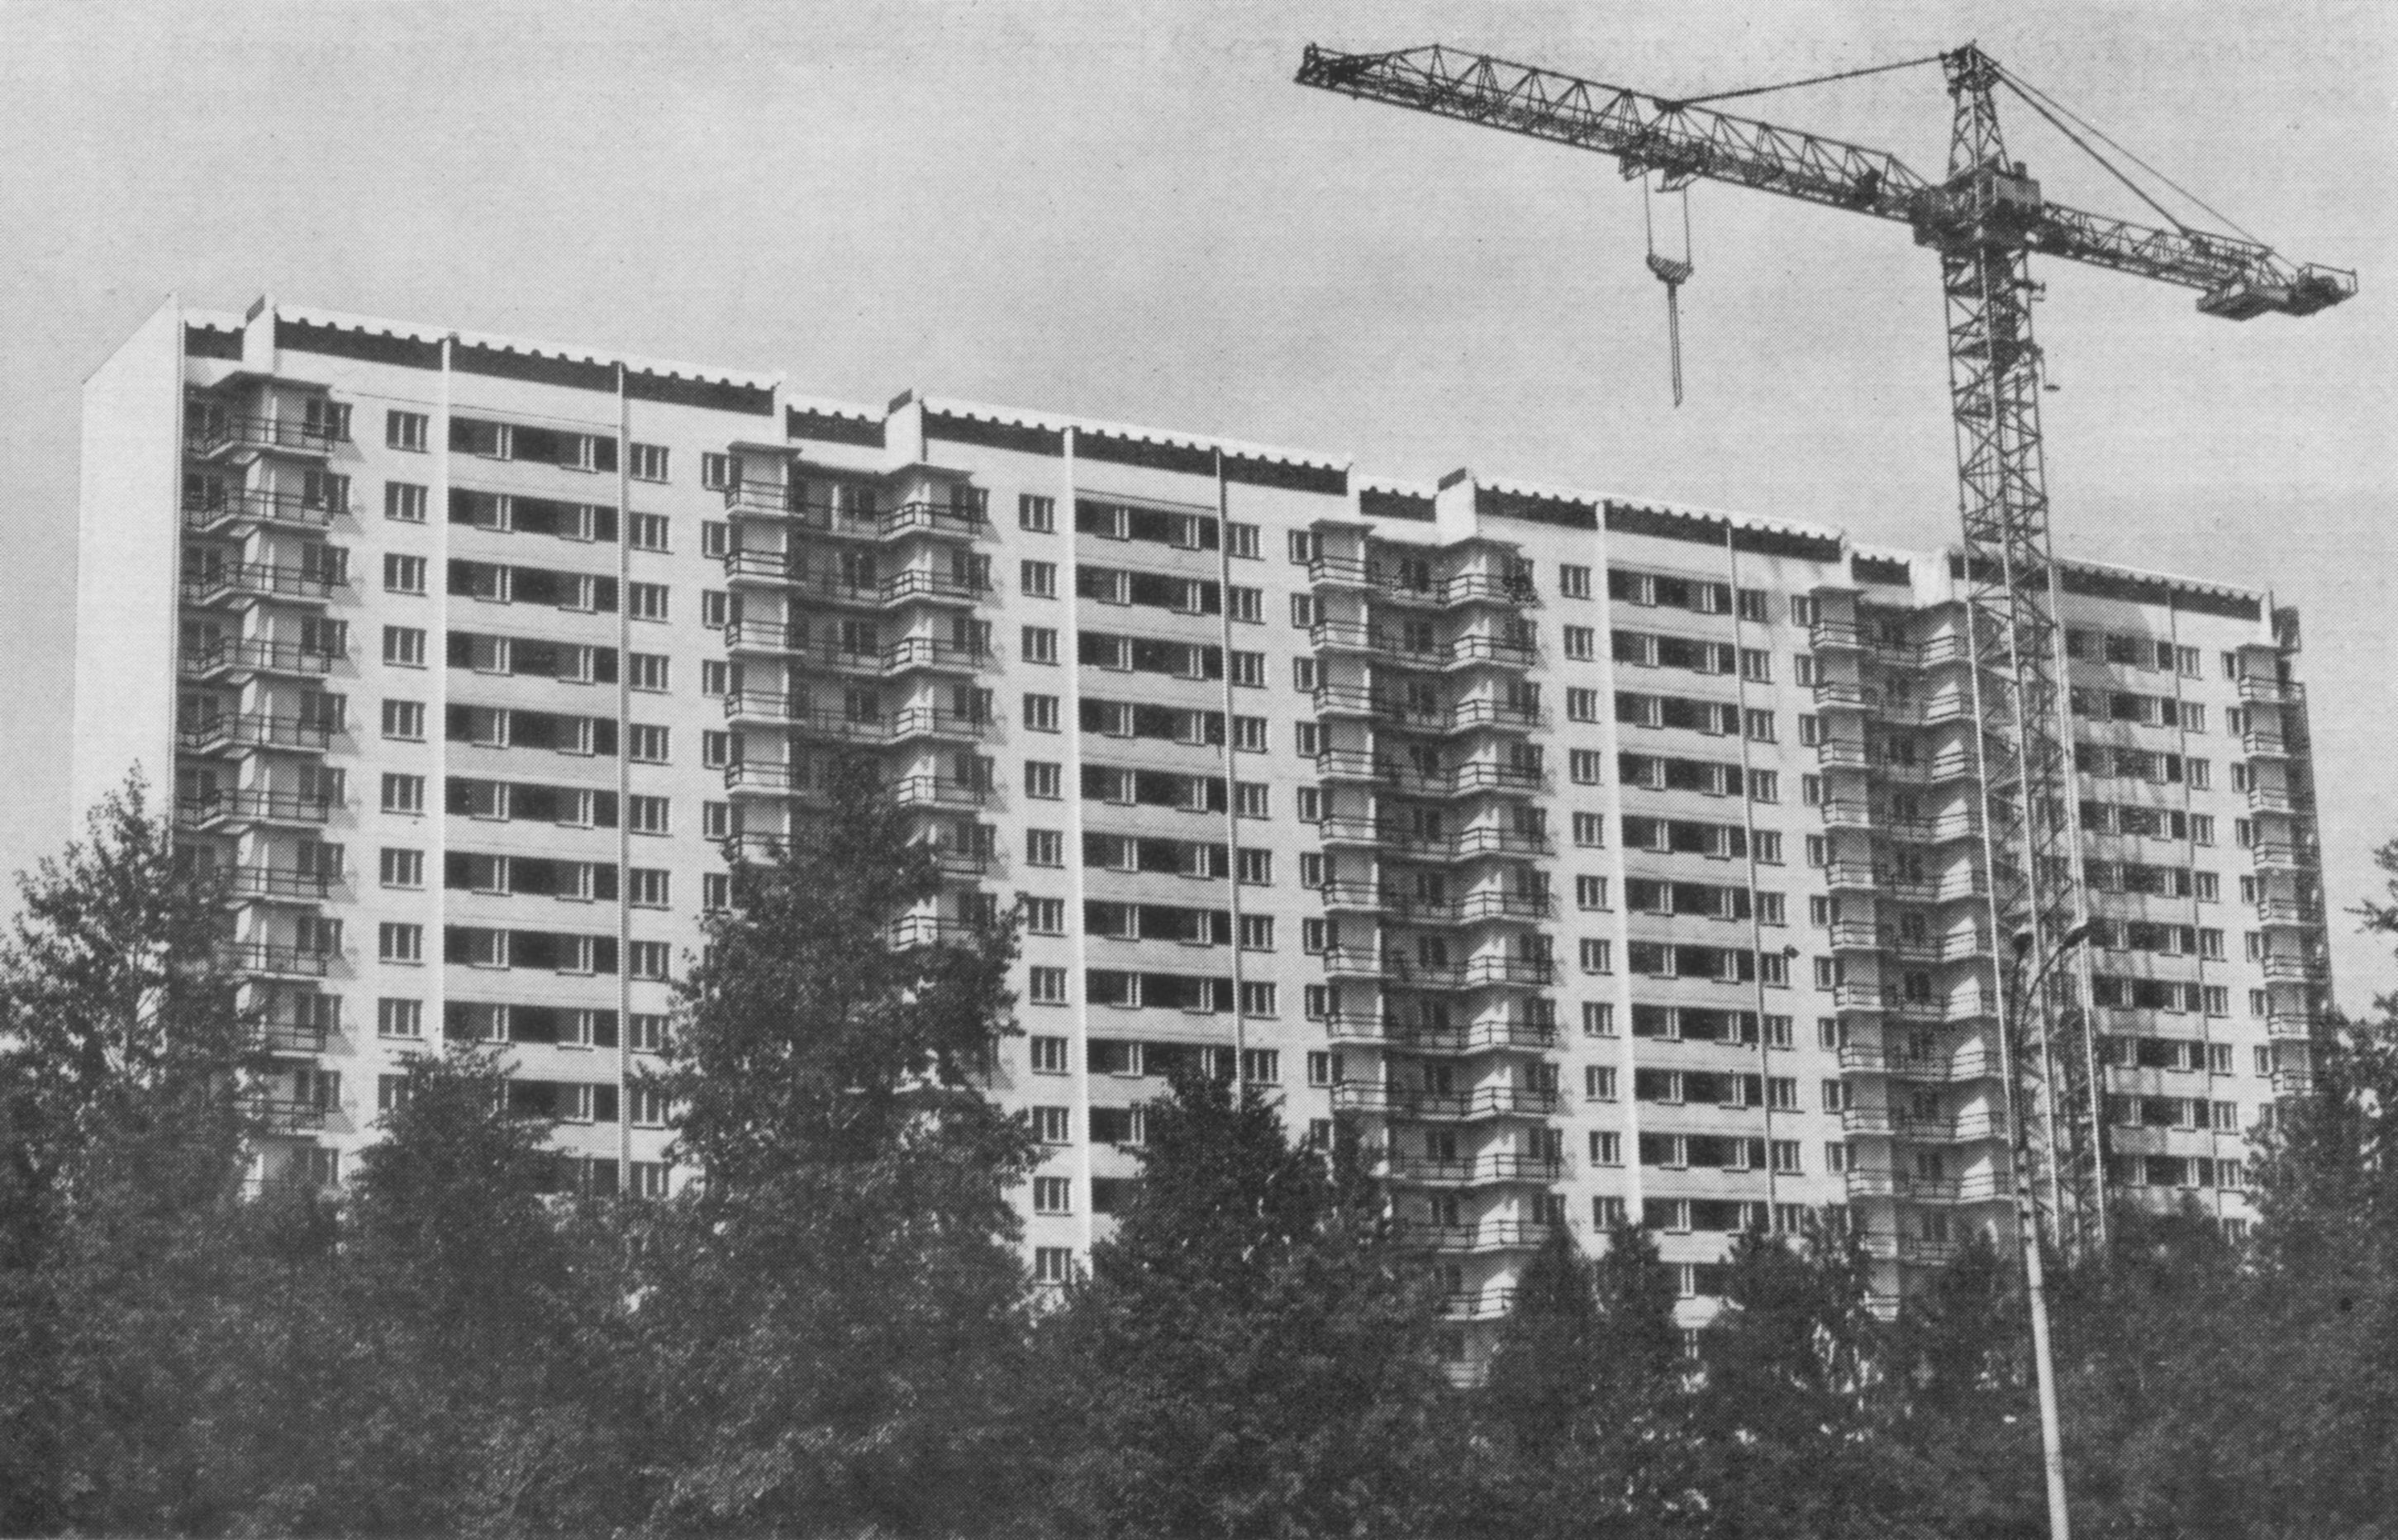 Тропарево. Строительство 16-этажного крупнопанельного жилого дома на основе изделий по единому каталогу